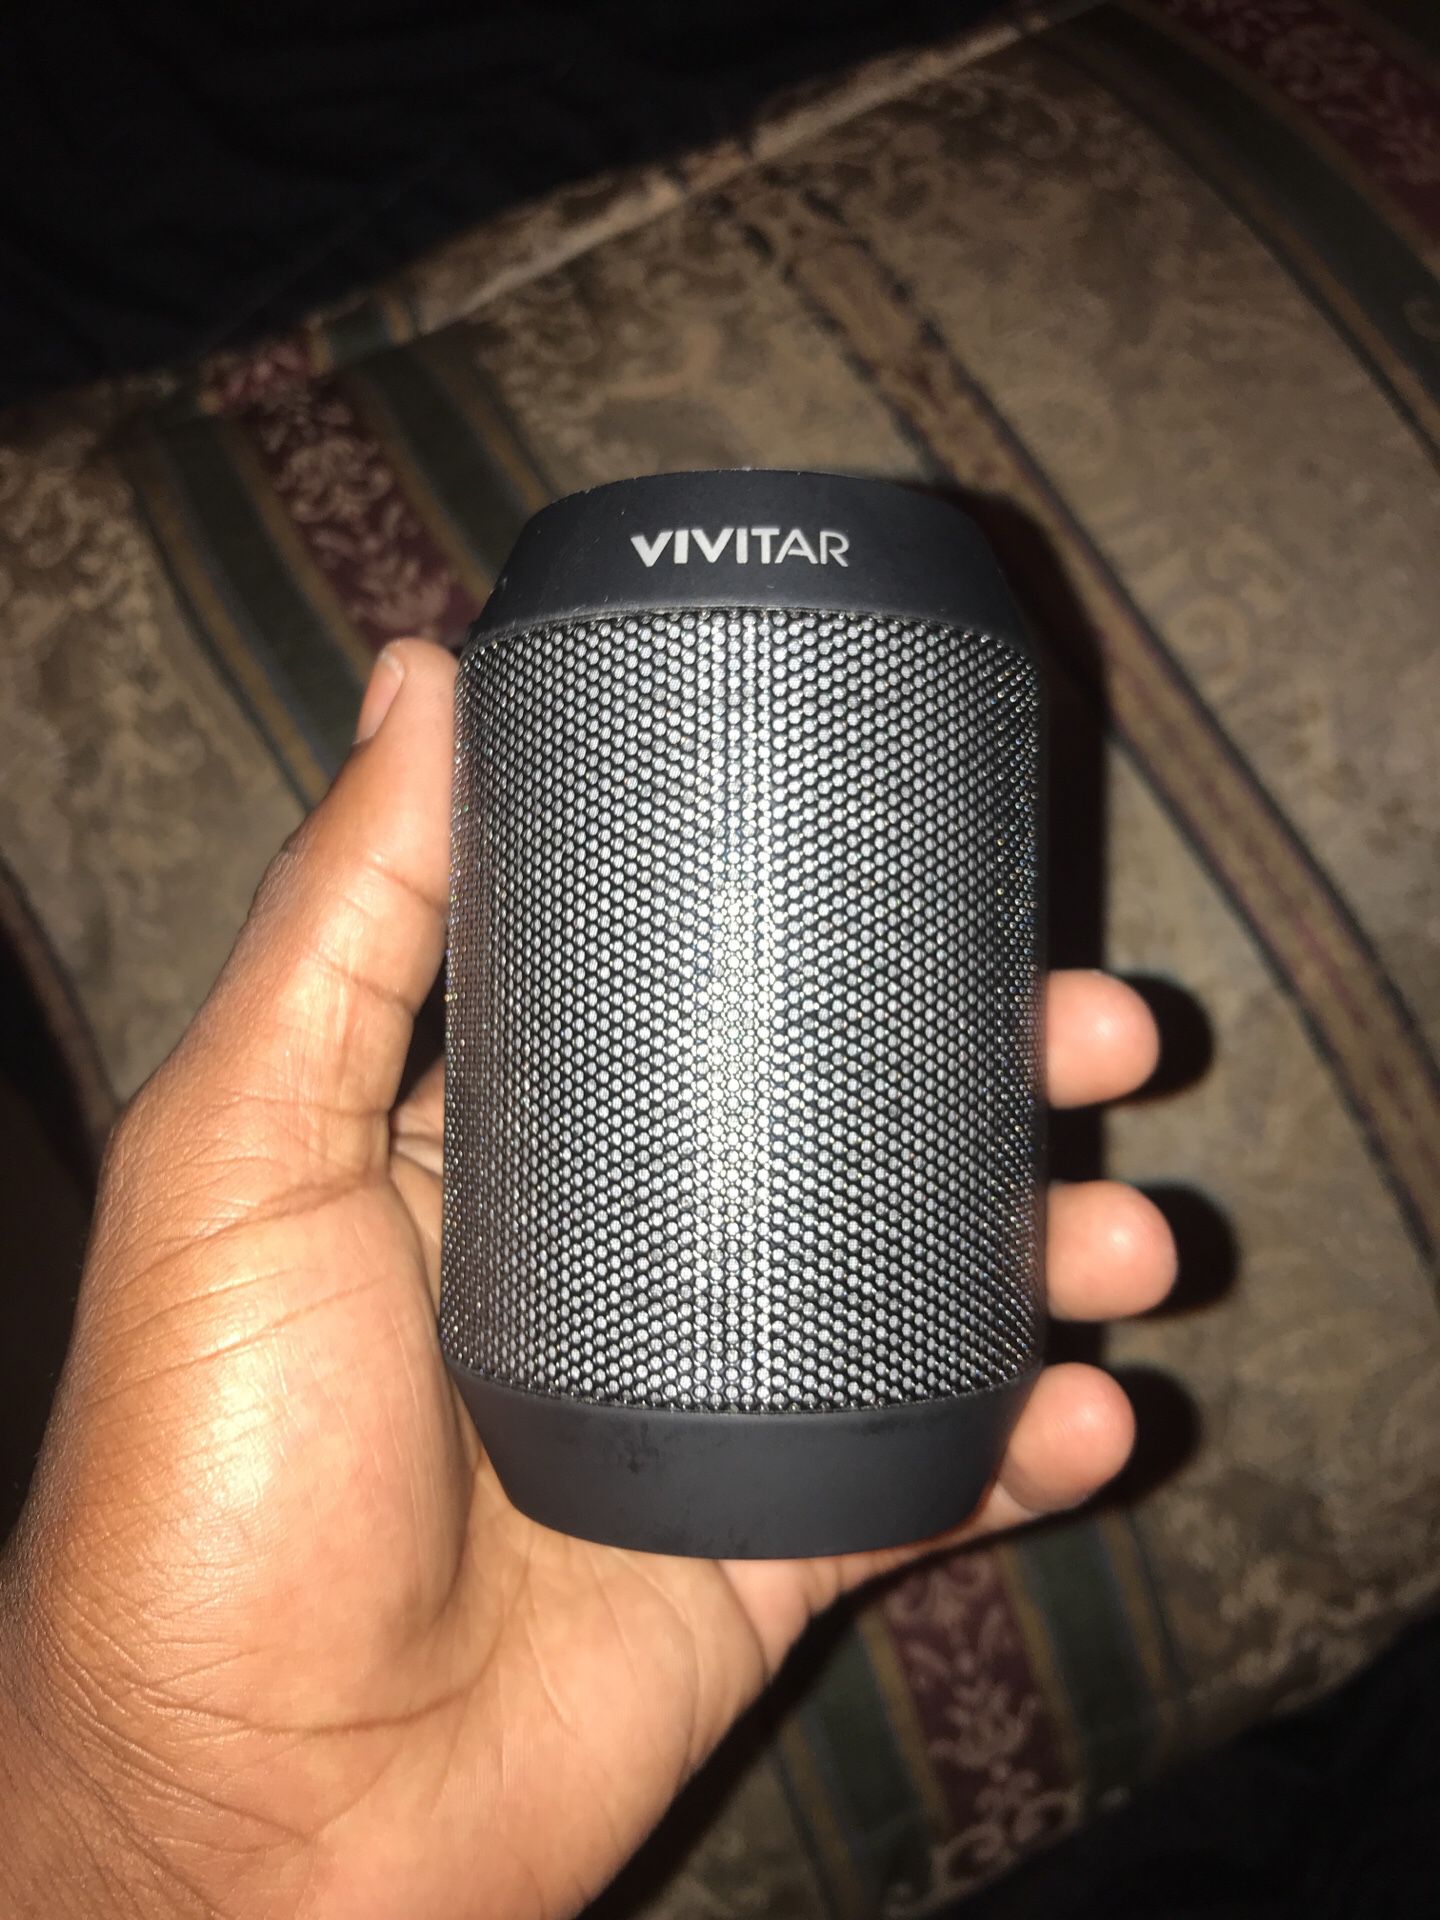 Vivitar Bluetooth speaker